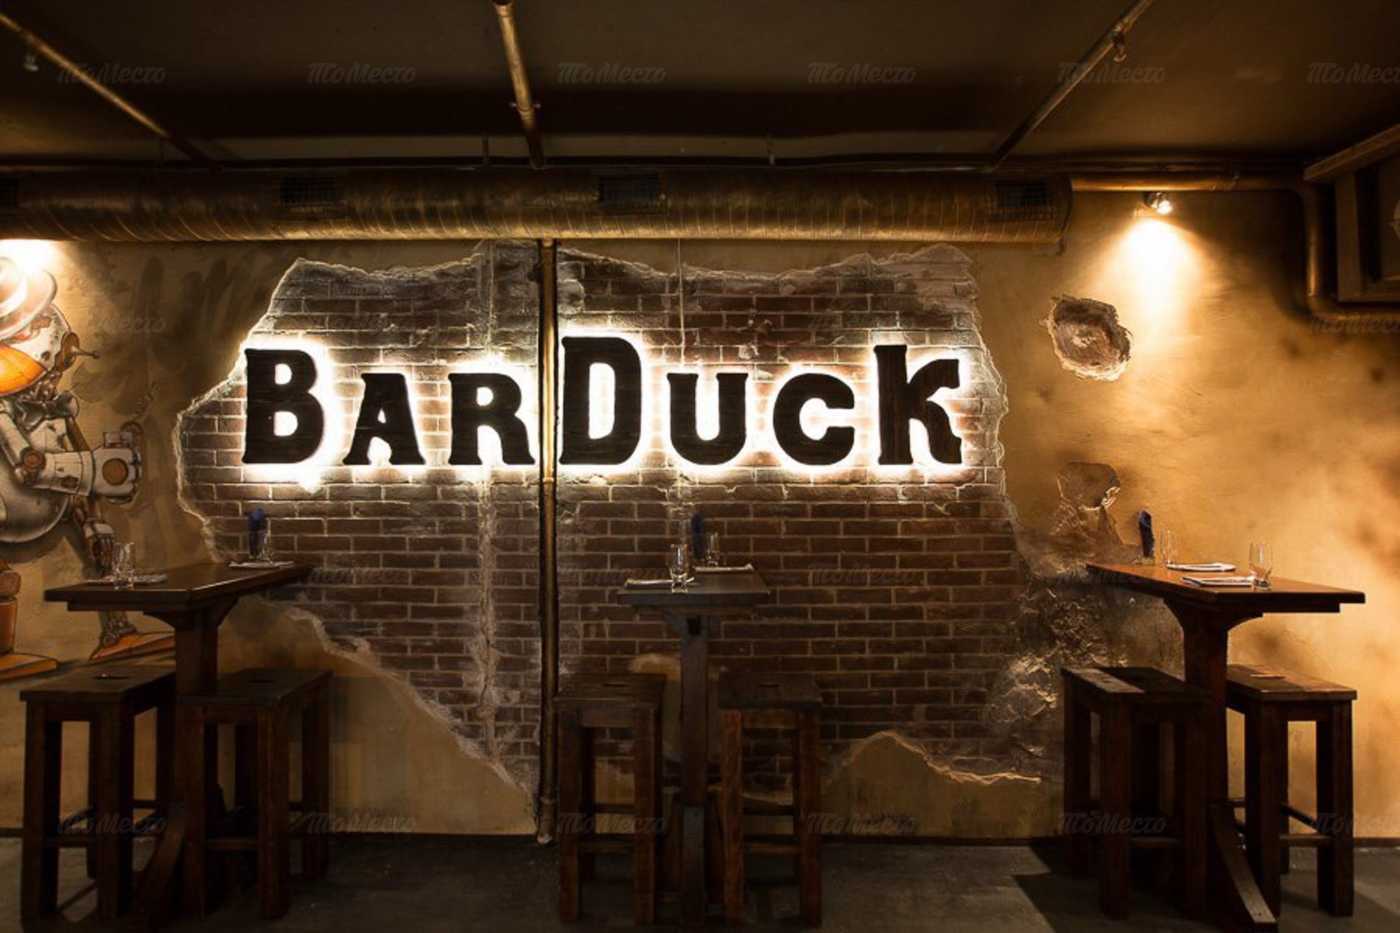 бар duck бар